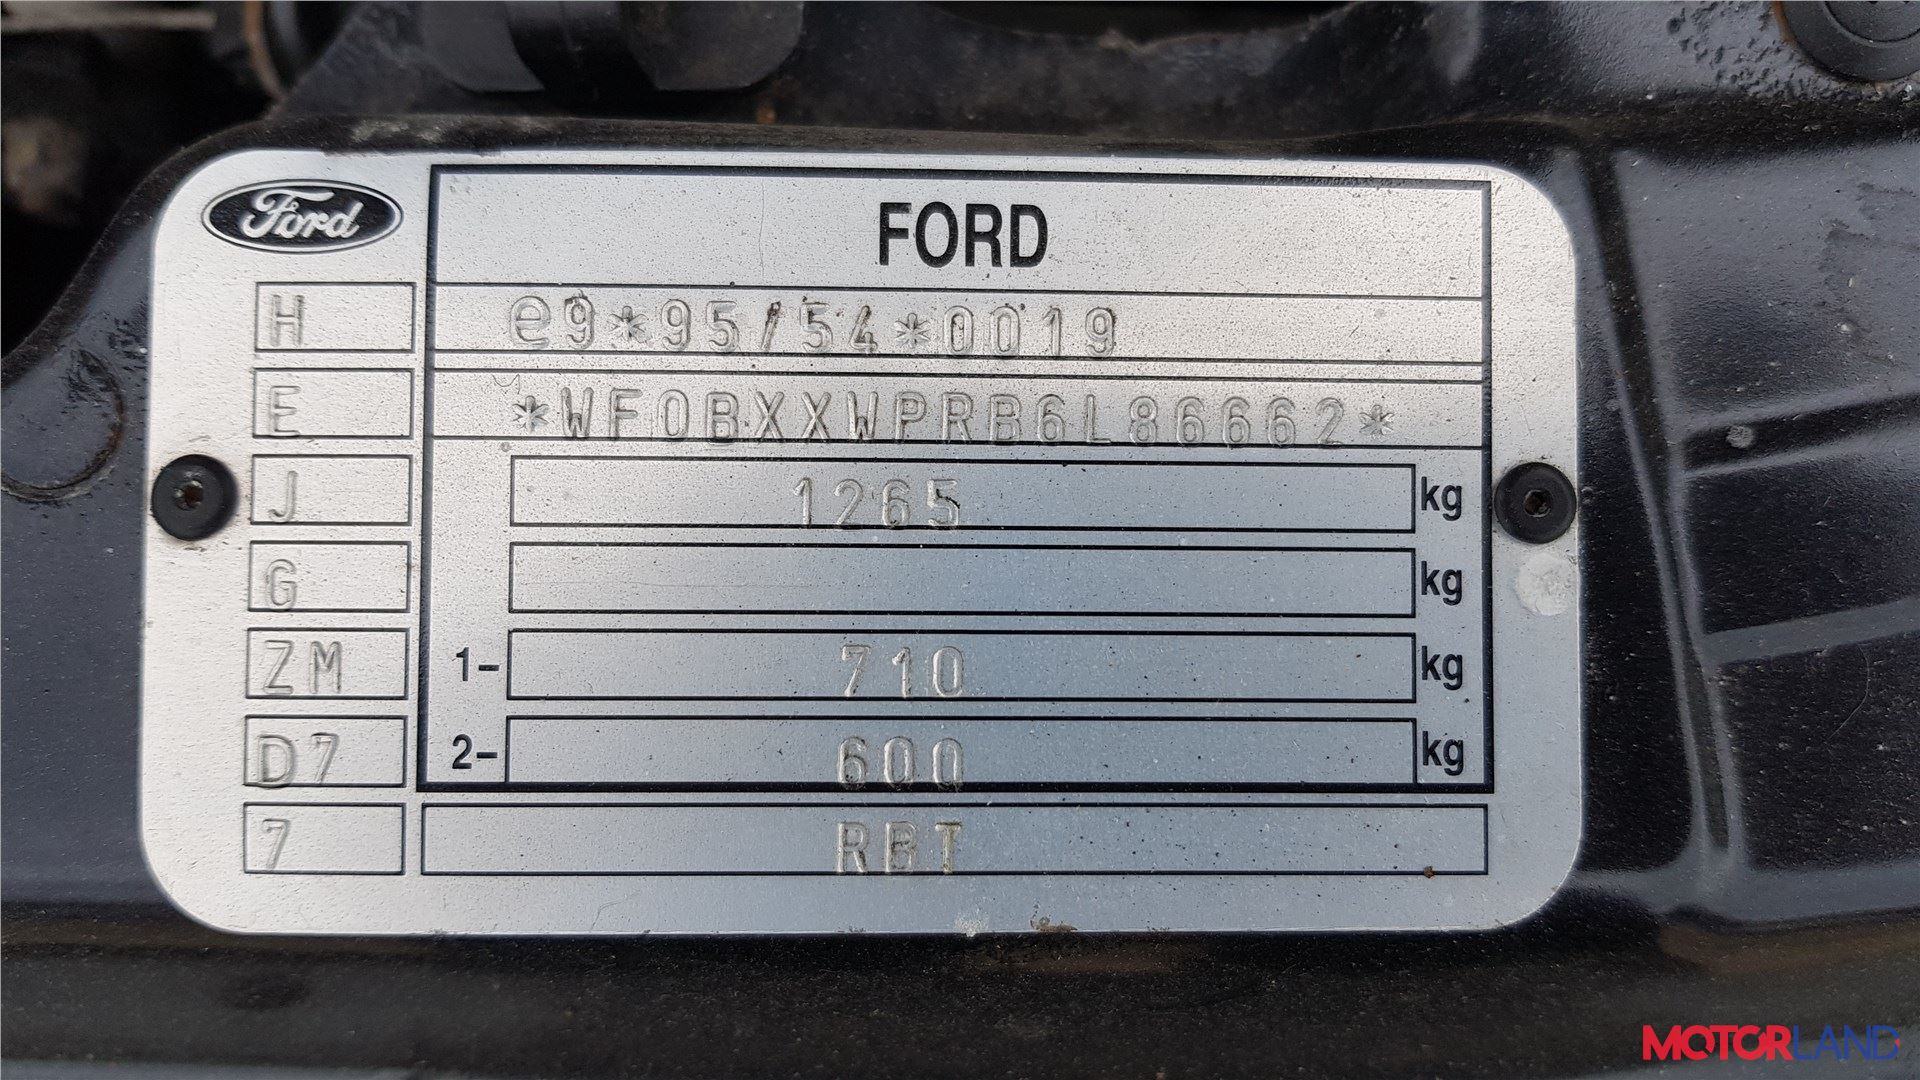 Подушка безопасности (Airbag) Ford Ka 1996-2008, артикул 5254925.